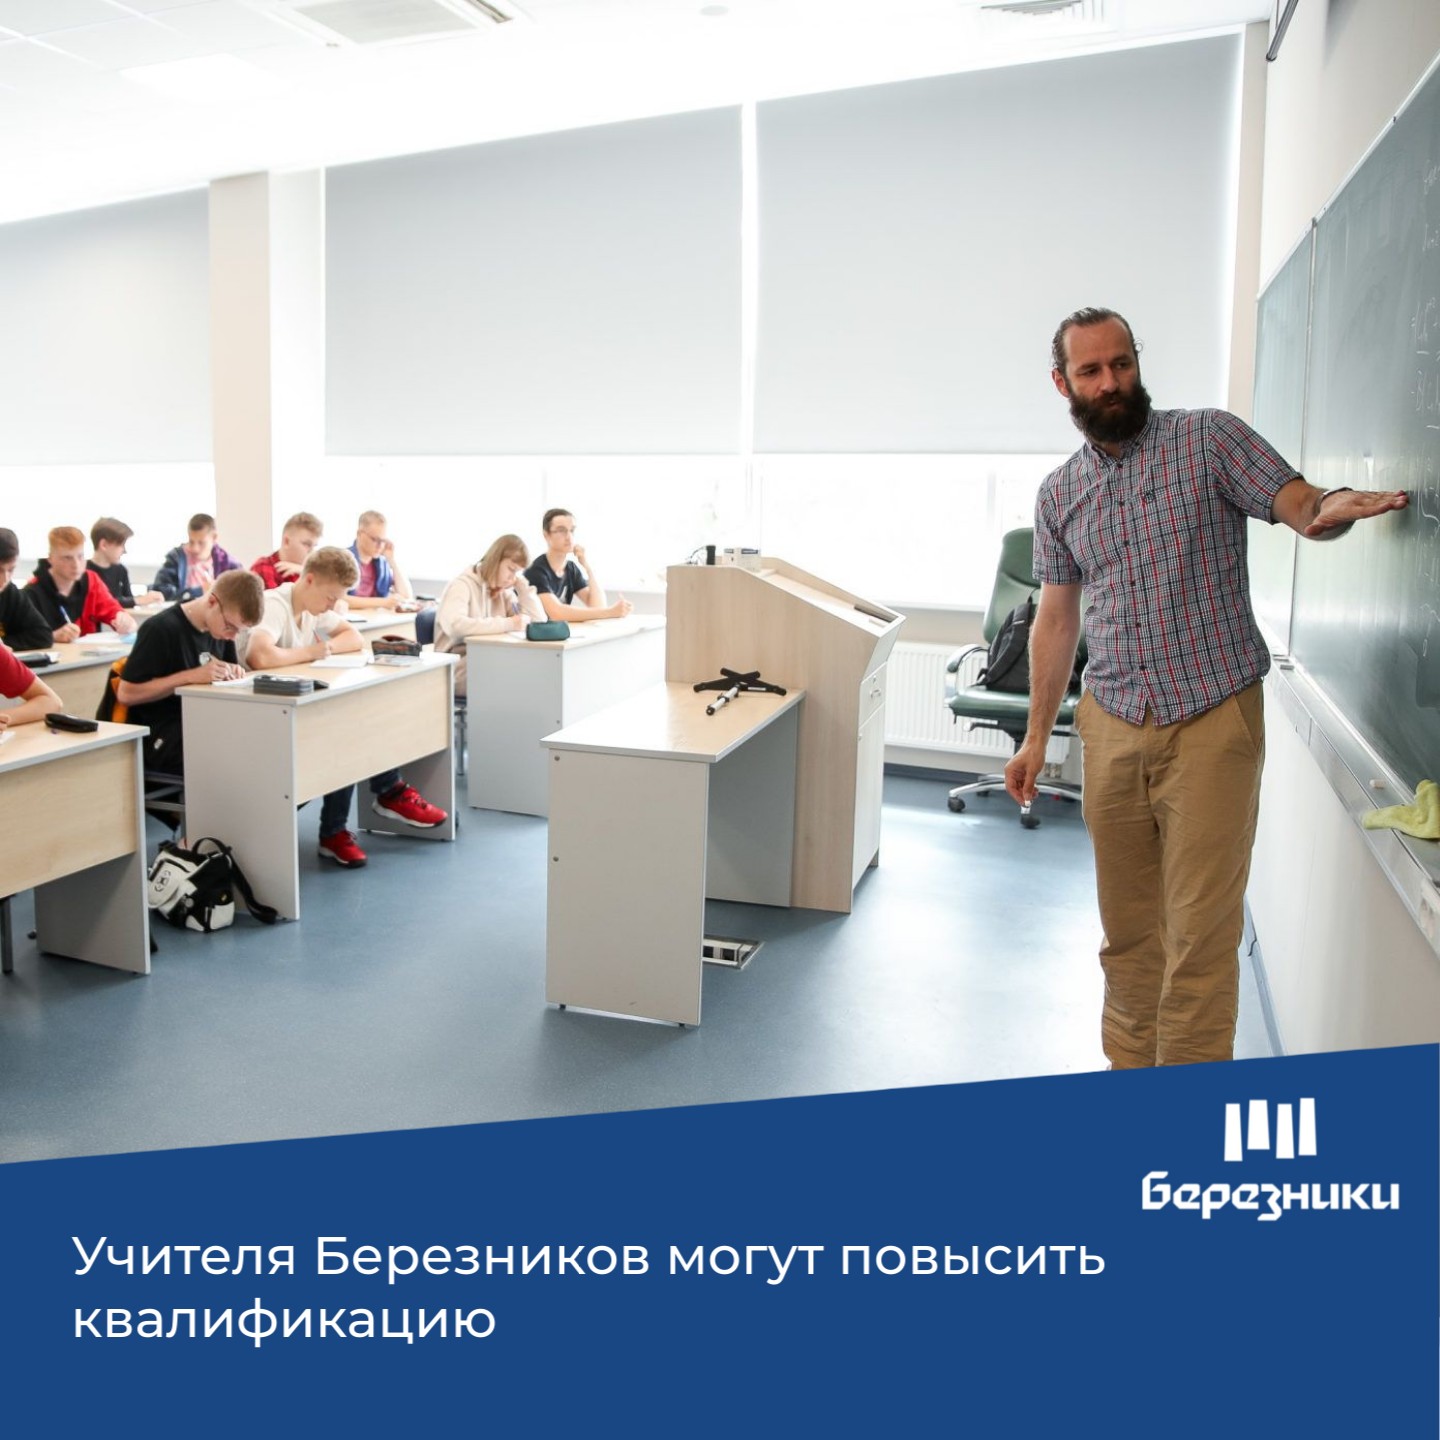 Березниковских учителей приглашают принять участие в программах повышения квалификации по физике или информатике